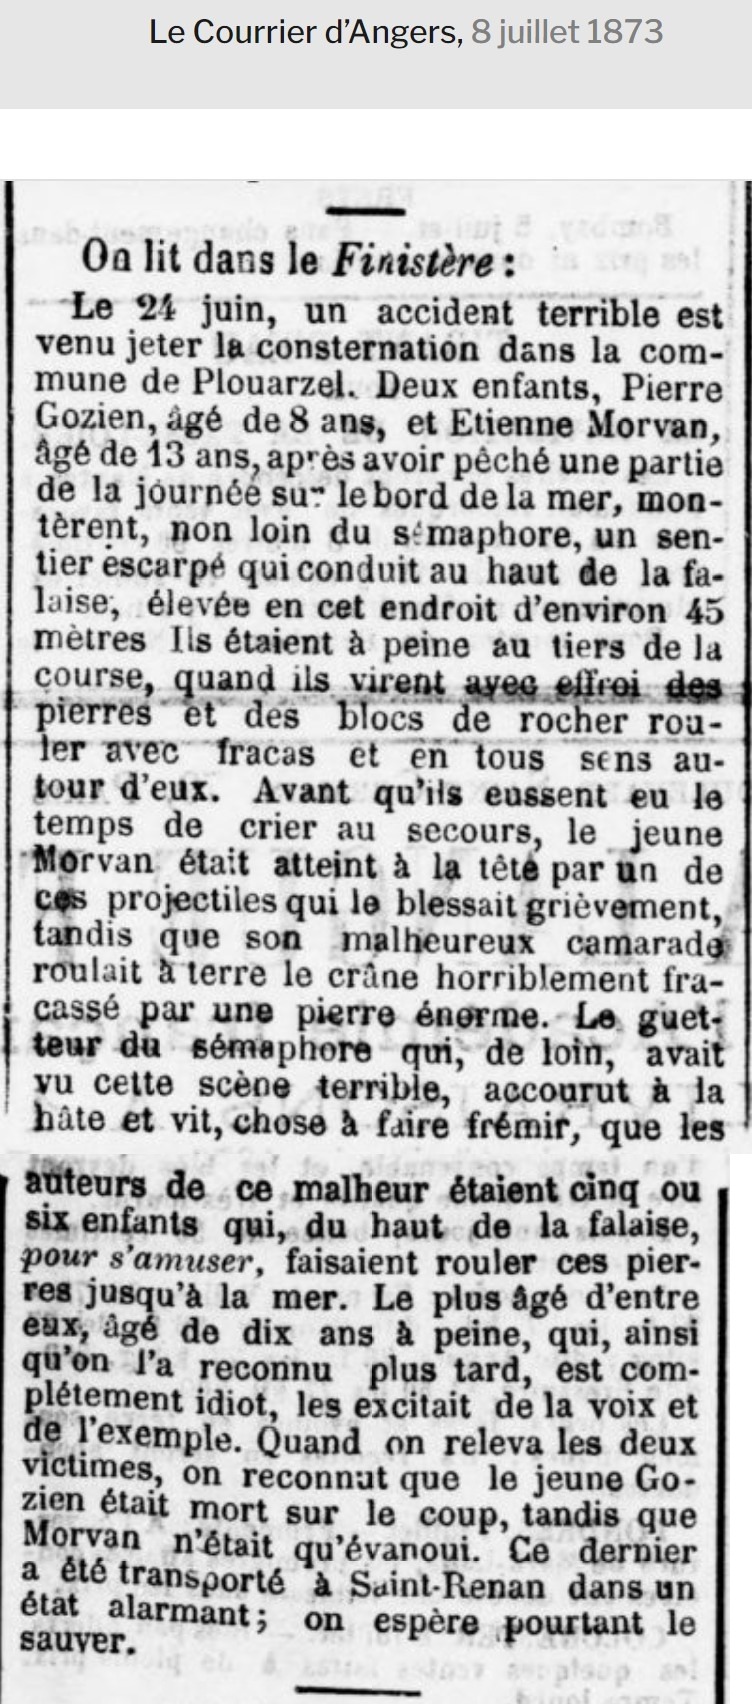 Presse Le Courrier d'Angers 1873-07-08 Accident MORVAN COZIEN